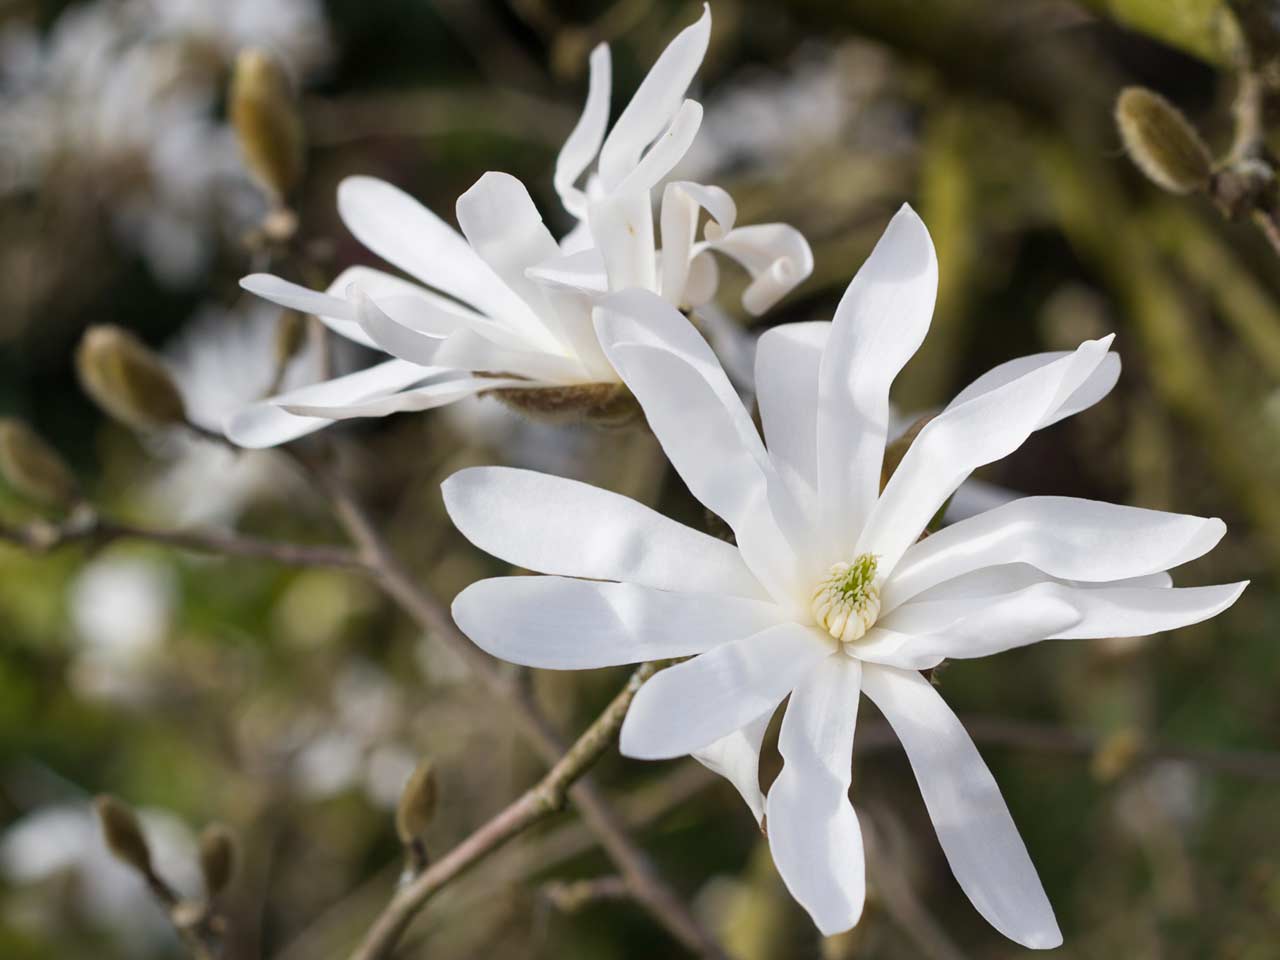 Where do magnolia trees usually grow?